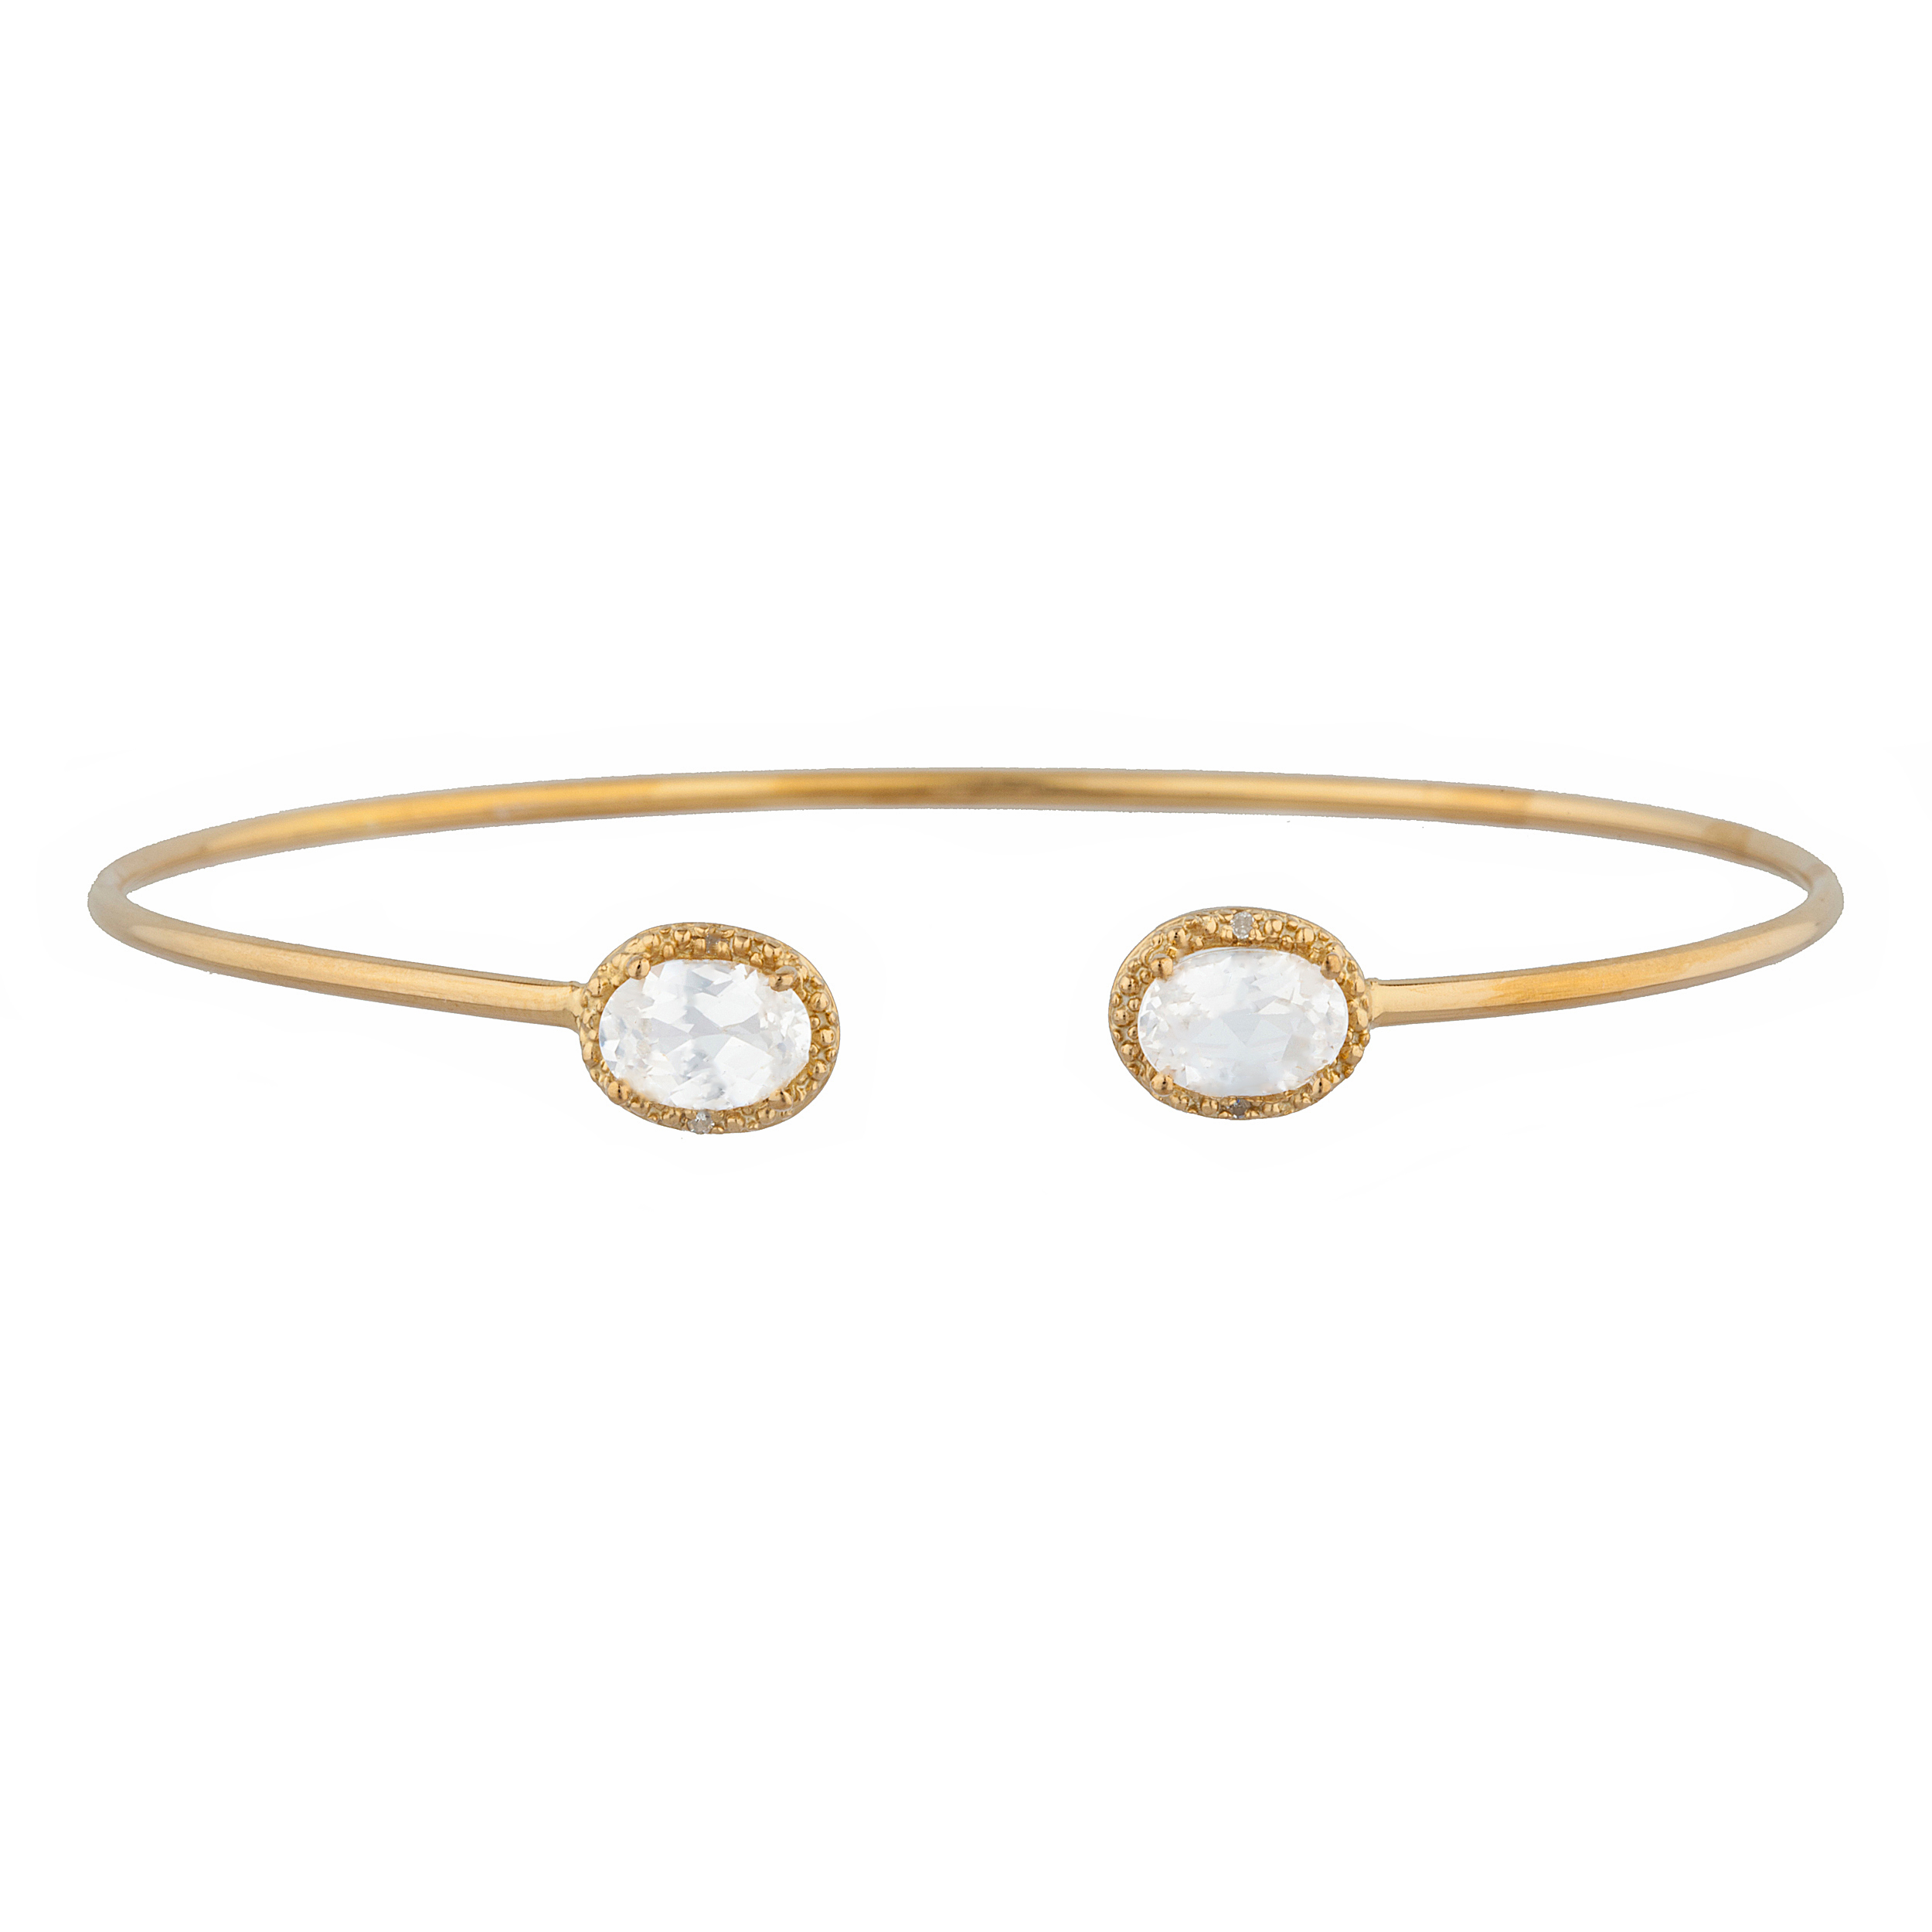 14Kt Gold White Sapphire & Diamond Oval Bangle Bracelet | eBay